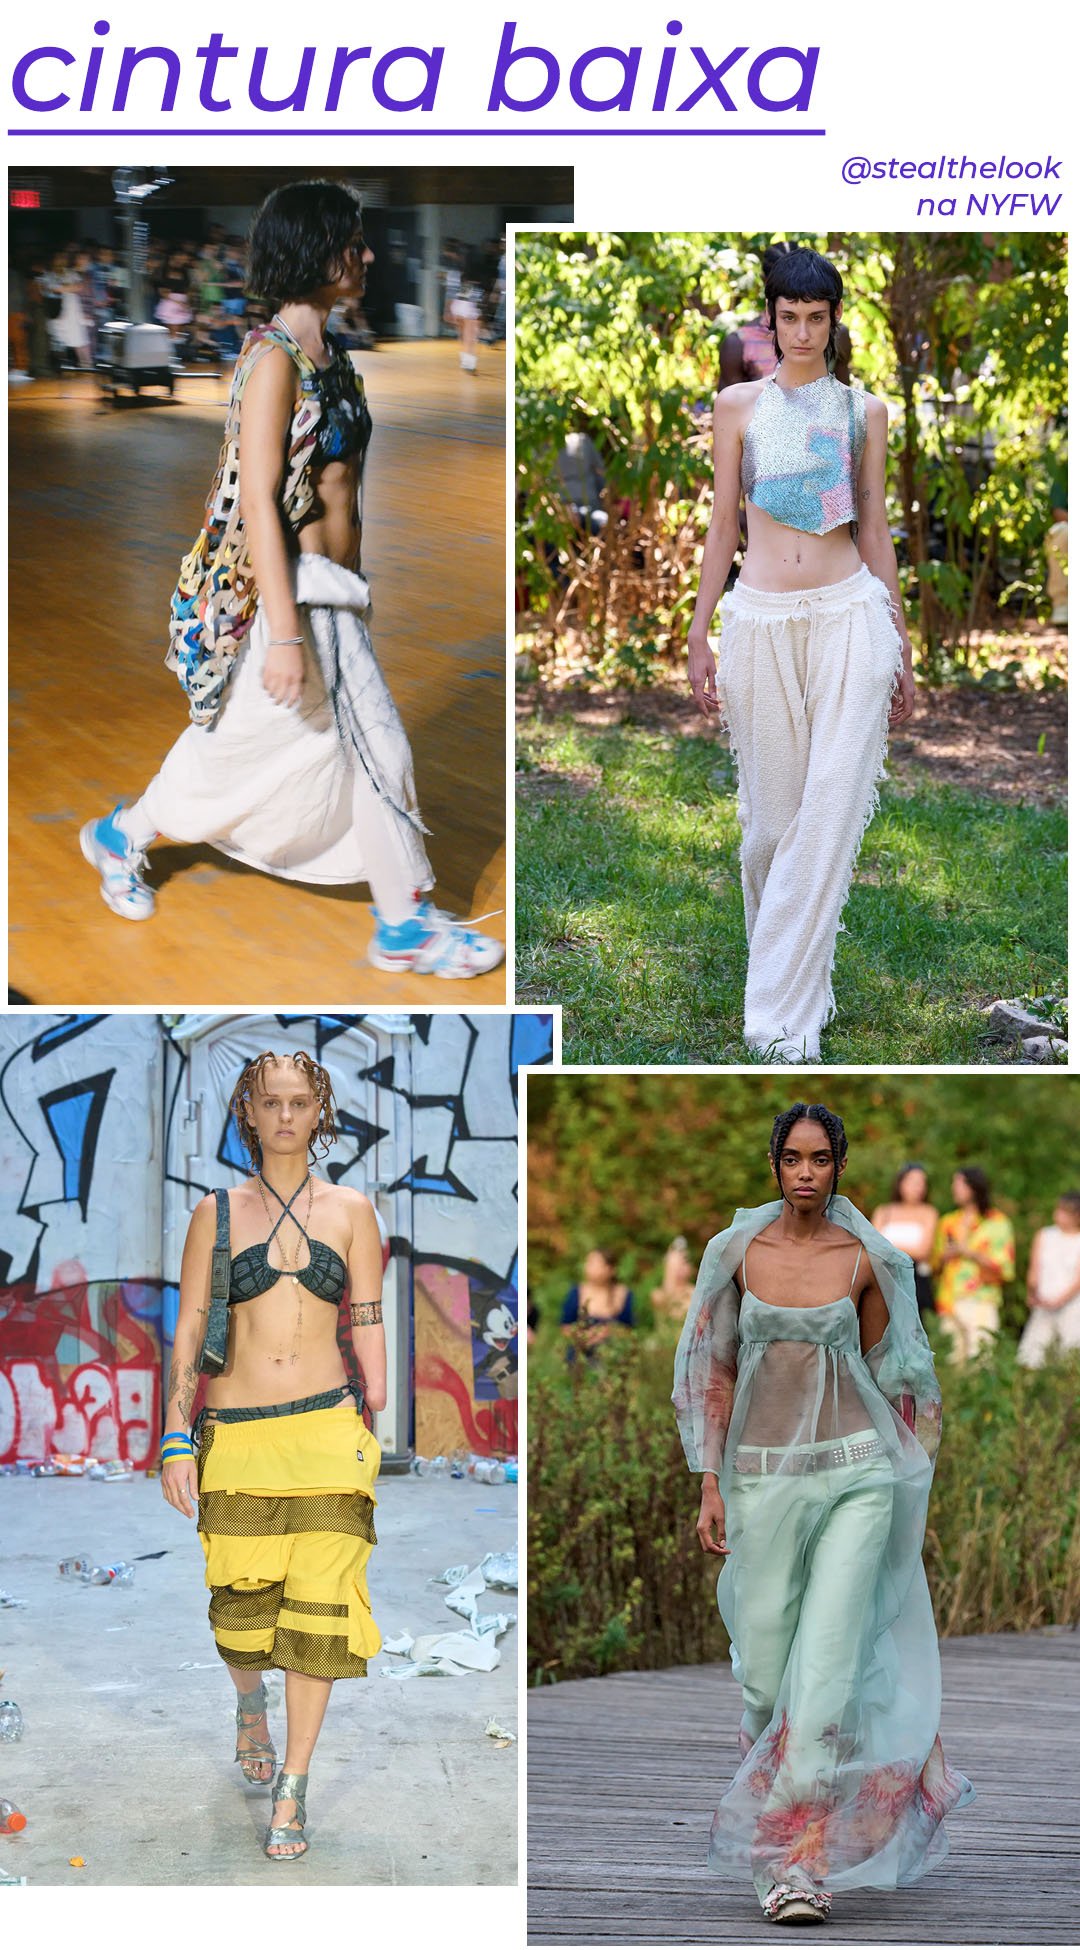 Colina Strada - roupas diversas - tendências de moda - Primavera - modelo andando pela passarela - https://stealthelook.com.br